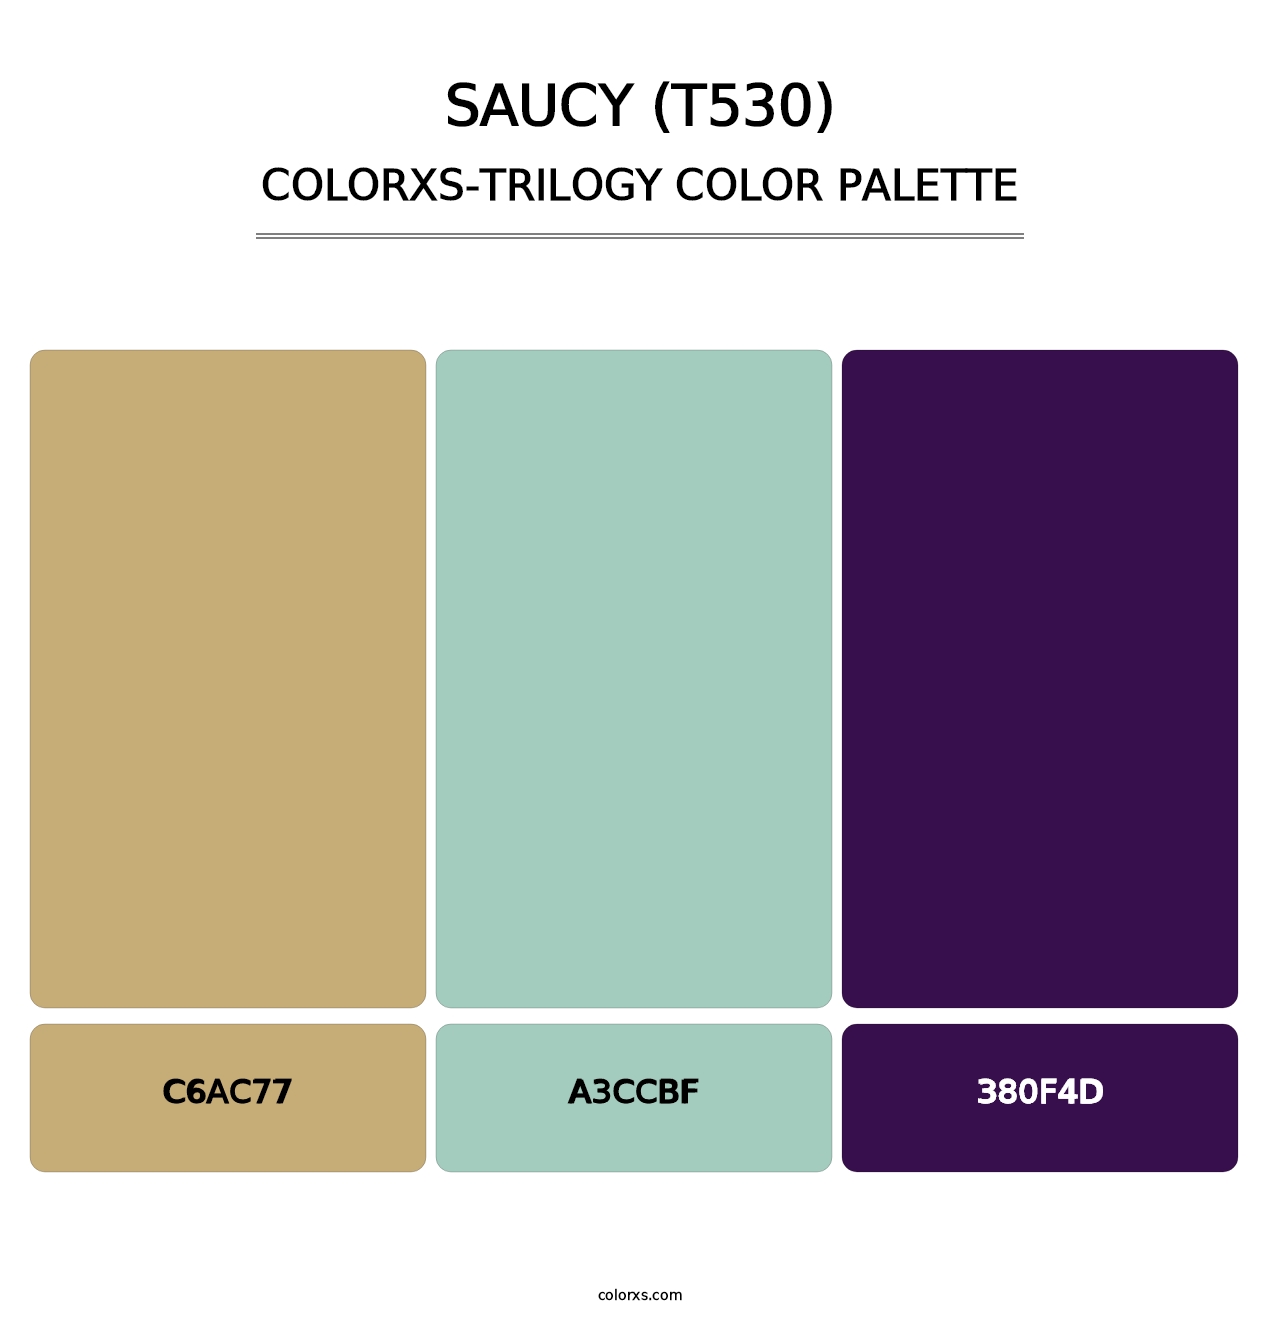 Saucy (T530) - Colorxs Trilogy Palette